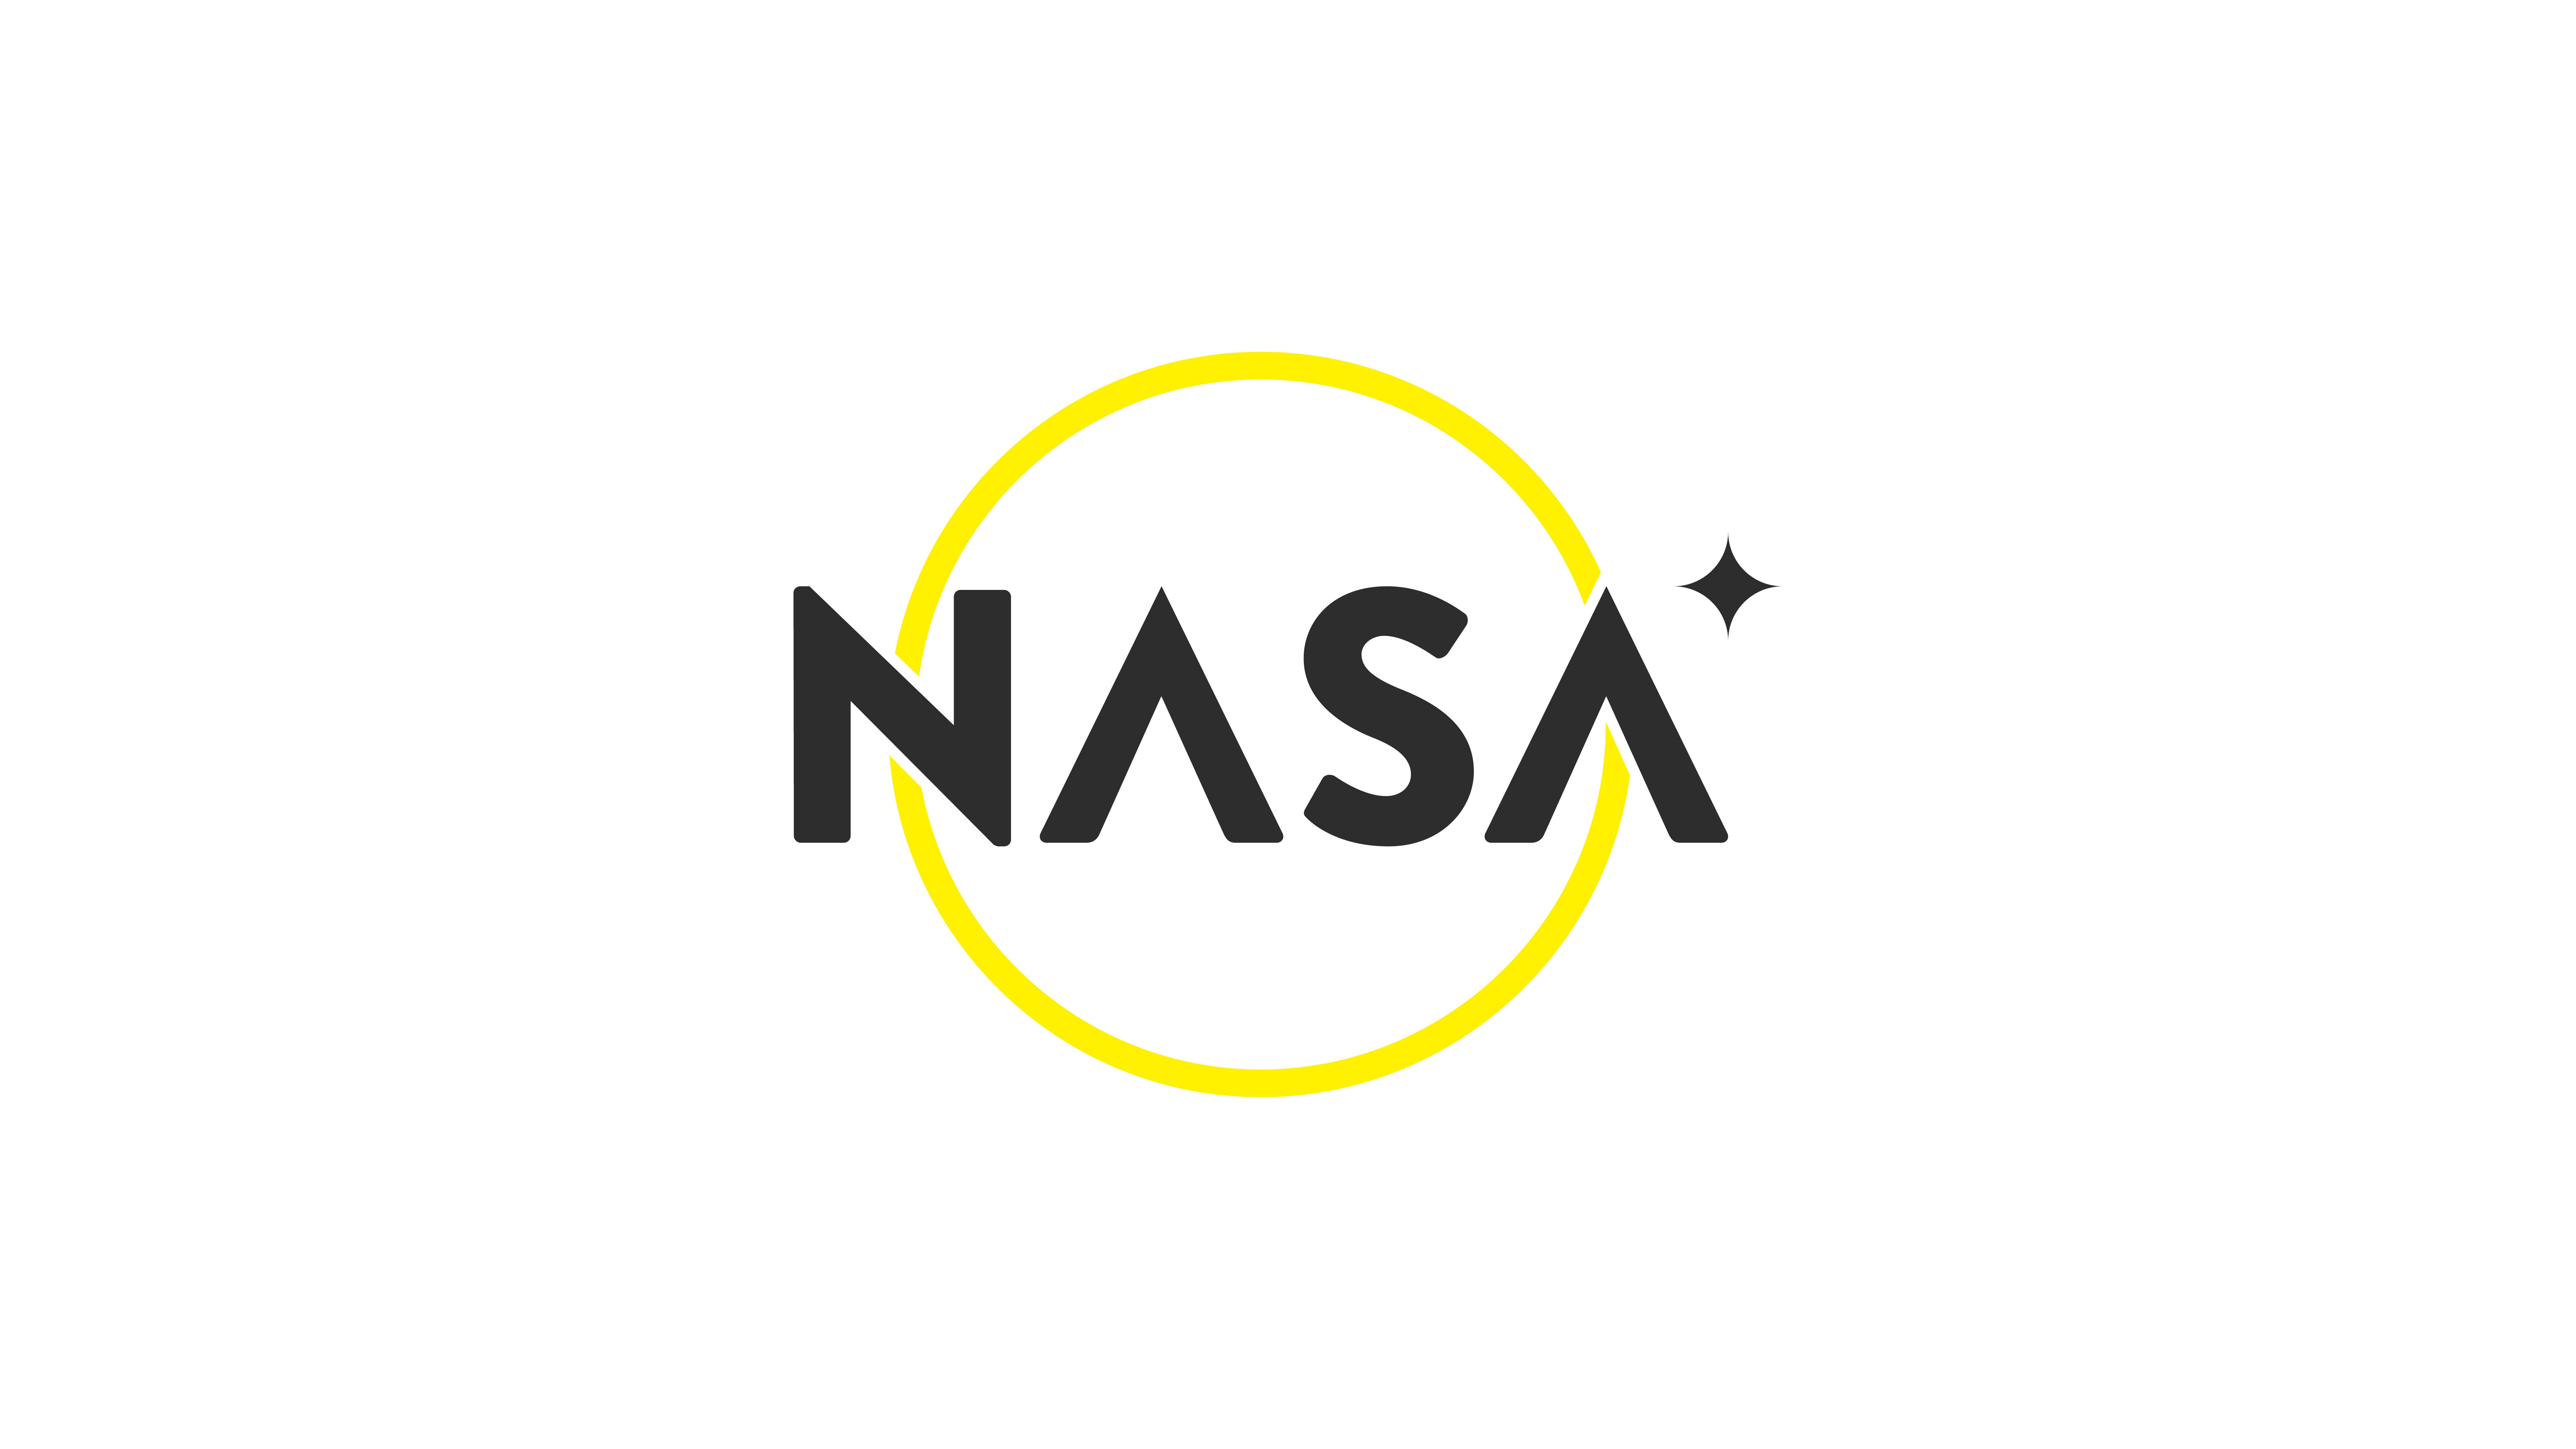 Nasa logo concept